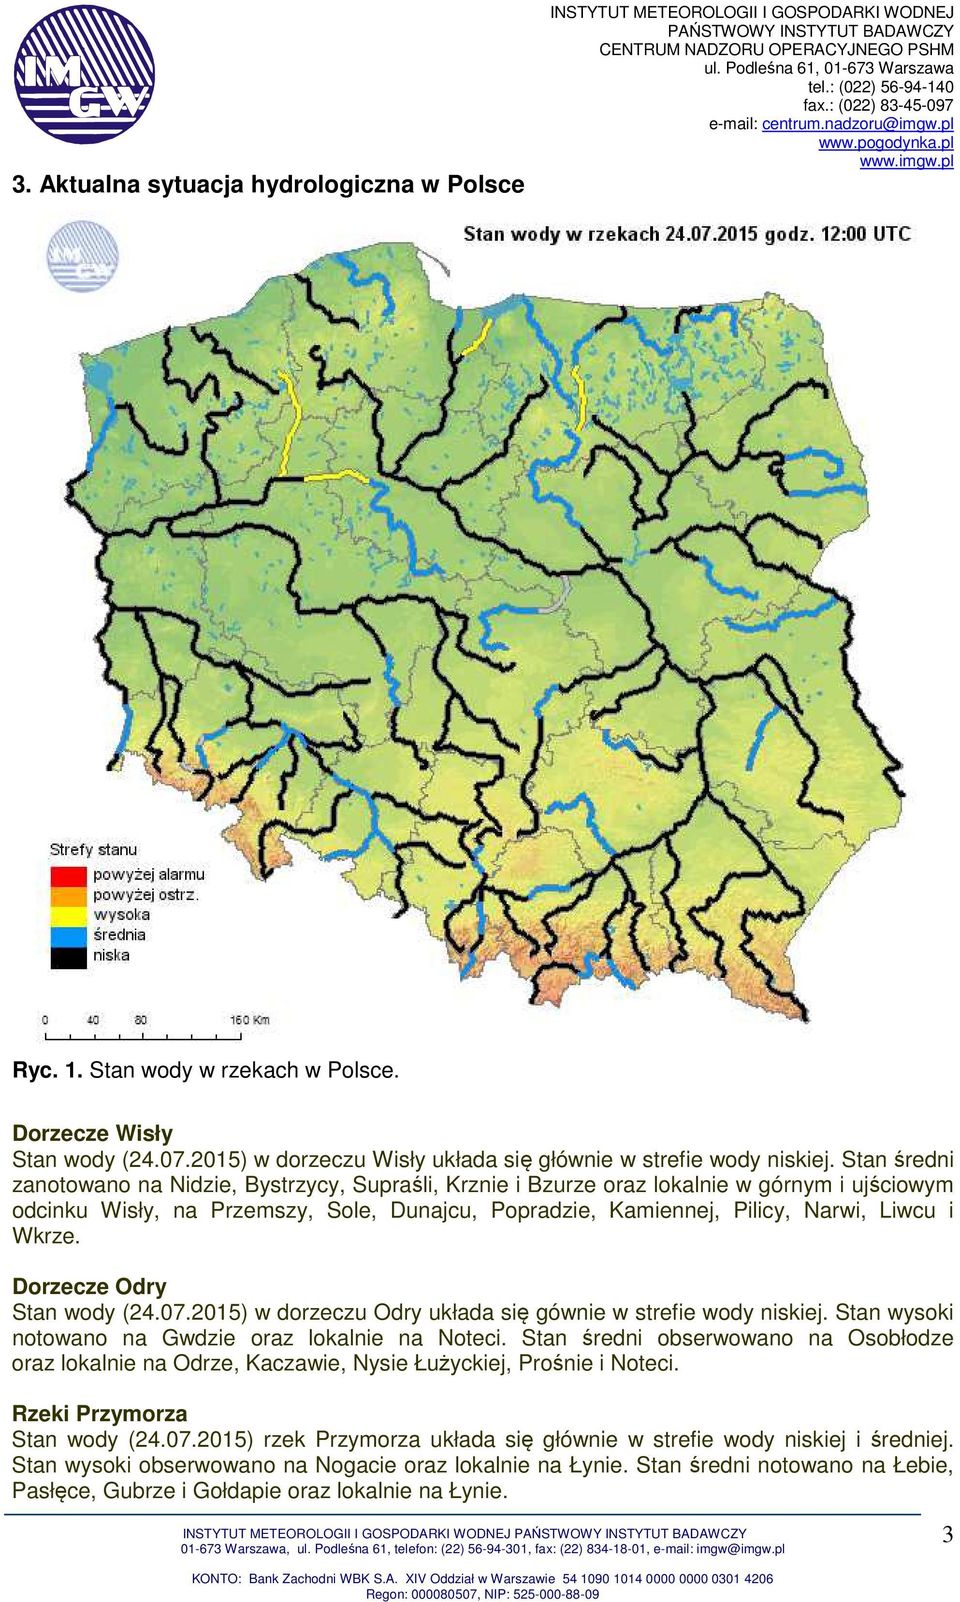 Stan średni zanotowano na Nidzie, Bystrzycy, Supraśli, Krznie i Bzurze oraz lokalnie w górnym i ujściowym odcinku Wisły, na Przemszy, Sole, Dunajcu, Popradzie, Kamiennej, Pilicy, Narwi, Liwcu i Wkrze.